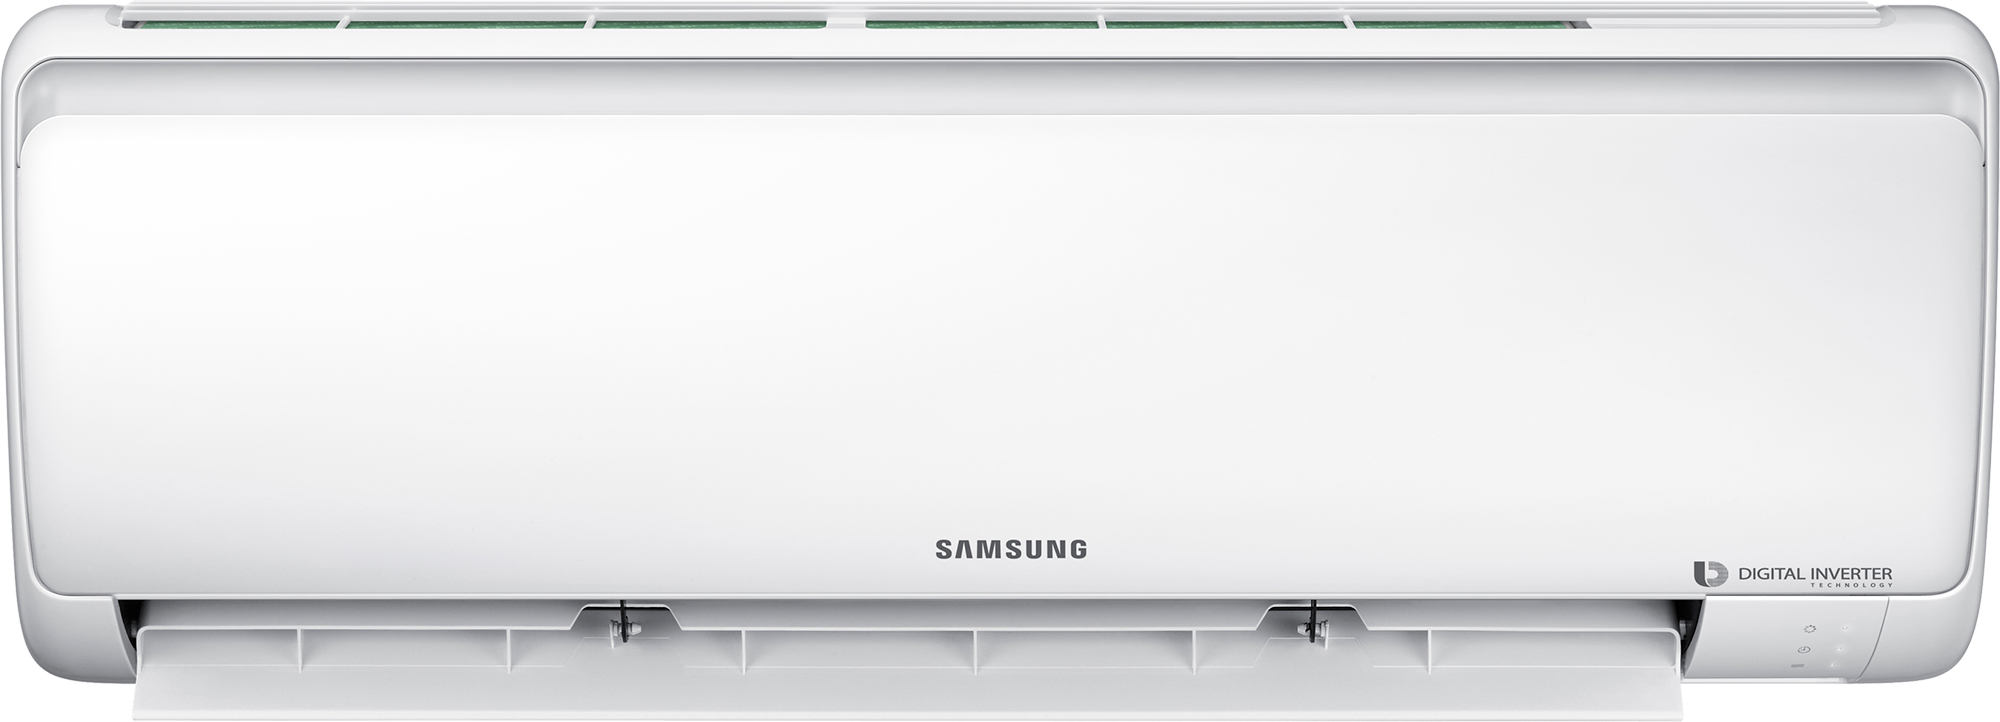 Кондиционер сплит-система Samsung AR09RSFPAWQNER / AR09RSFPAWQXER цена 0.00 грн - фотография 2